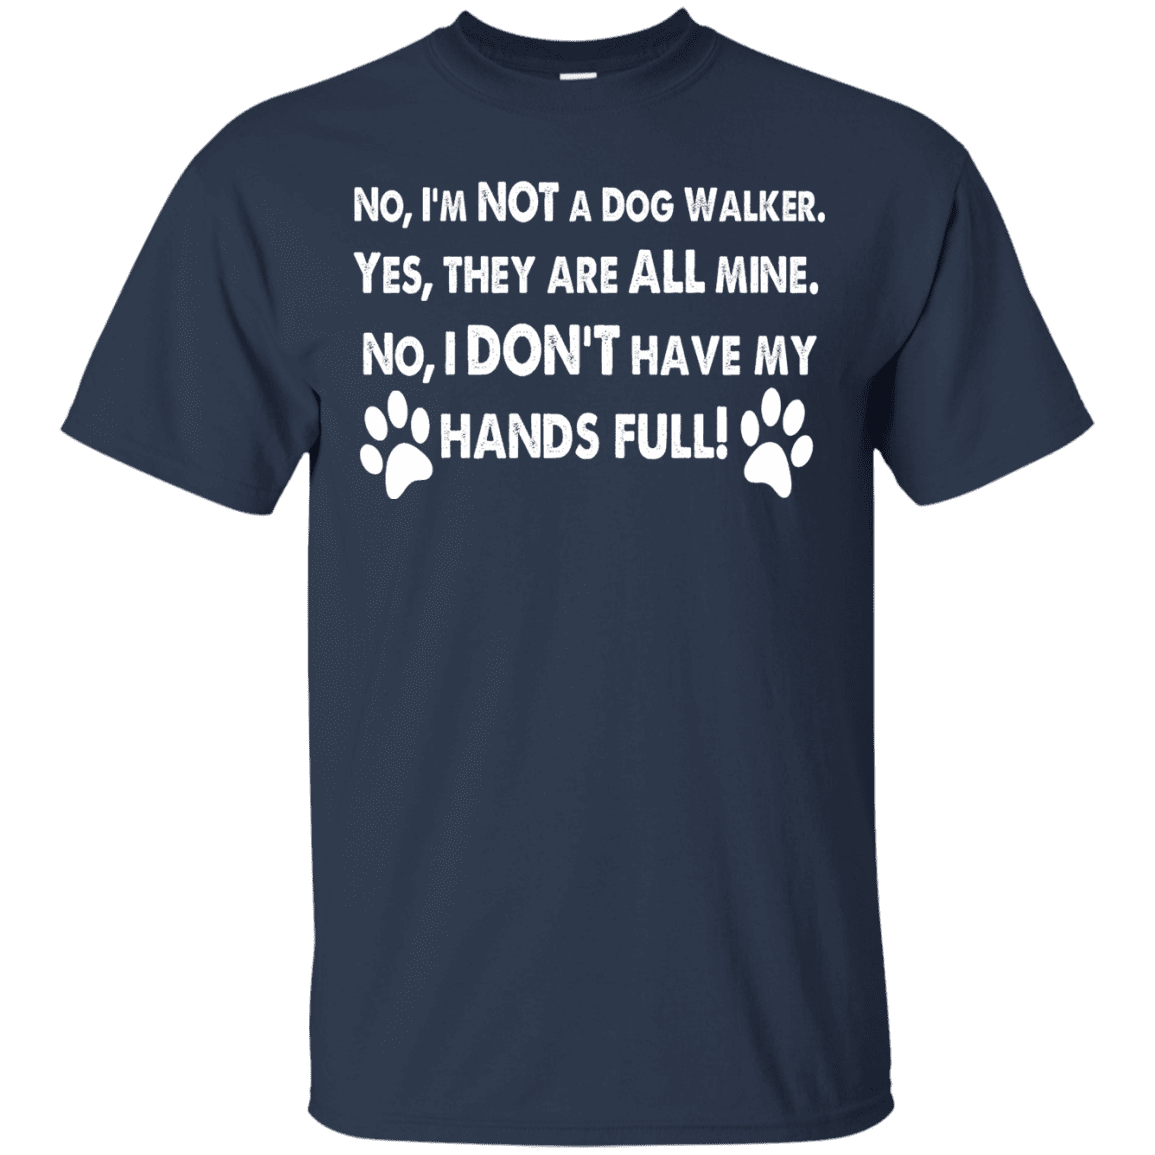 Not A Dog Walker - T Shirt.